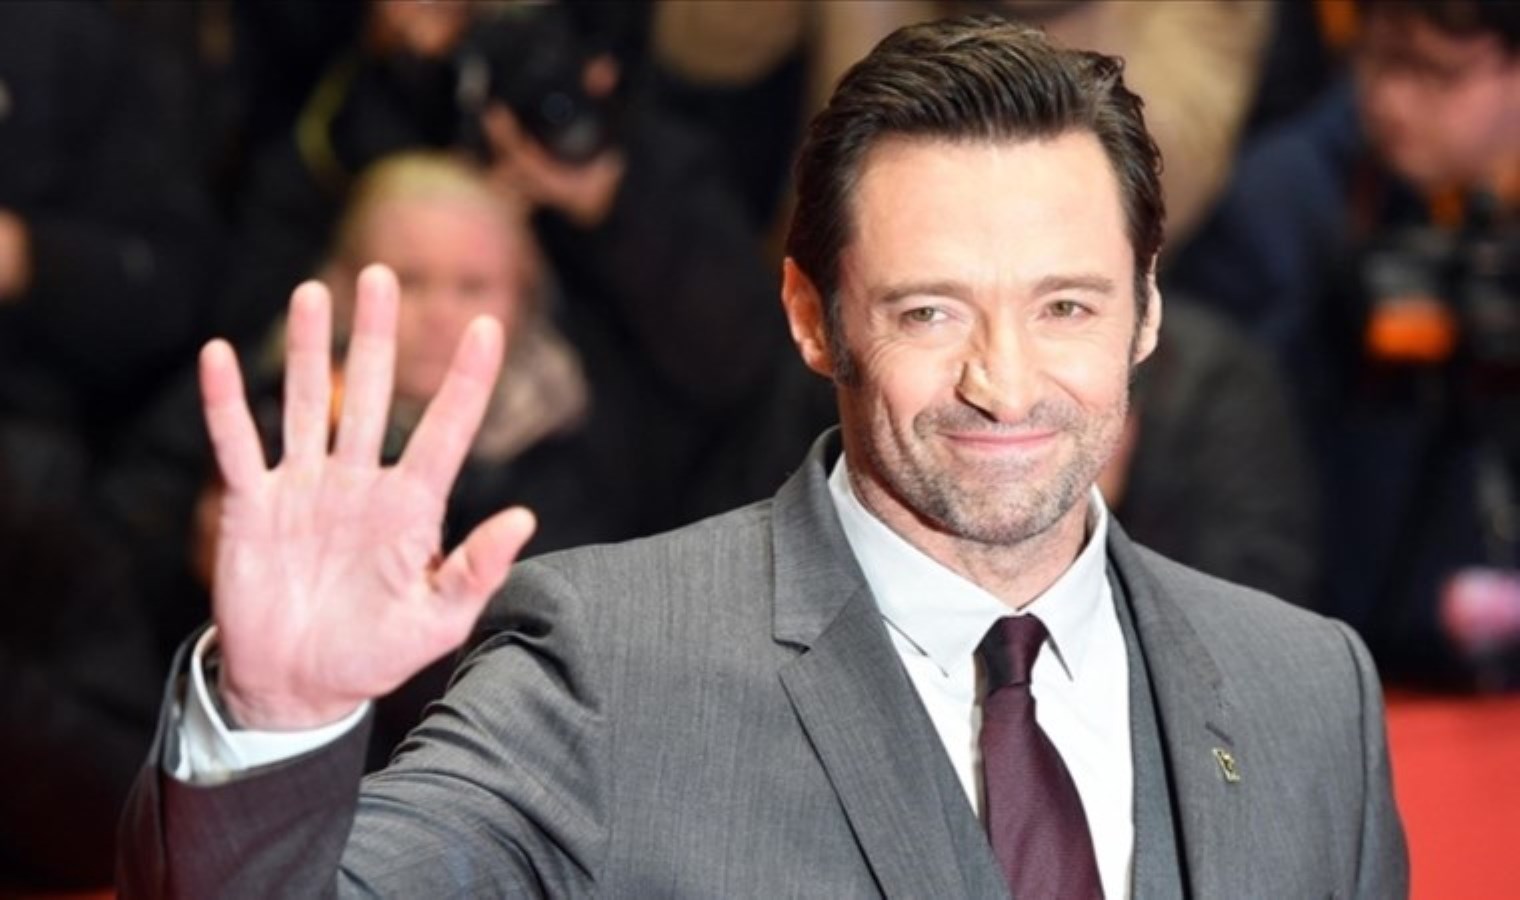 ‘Wolverine’ rolüyle hafızalara kazınan Hugh Jackman’dan öfke nöbeti itirafı: ‘Her zaman iyi biri değilim’